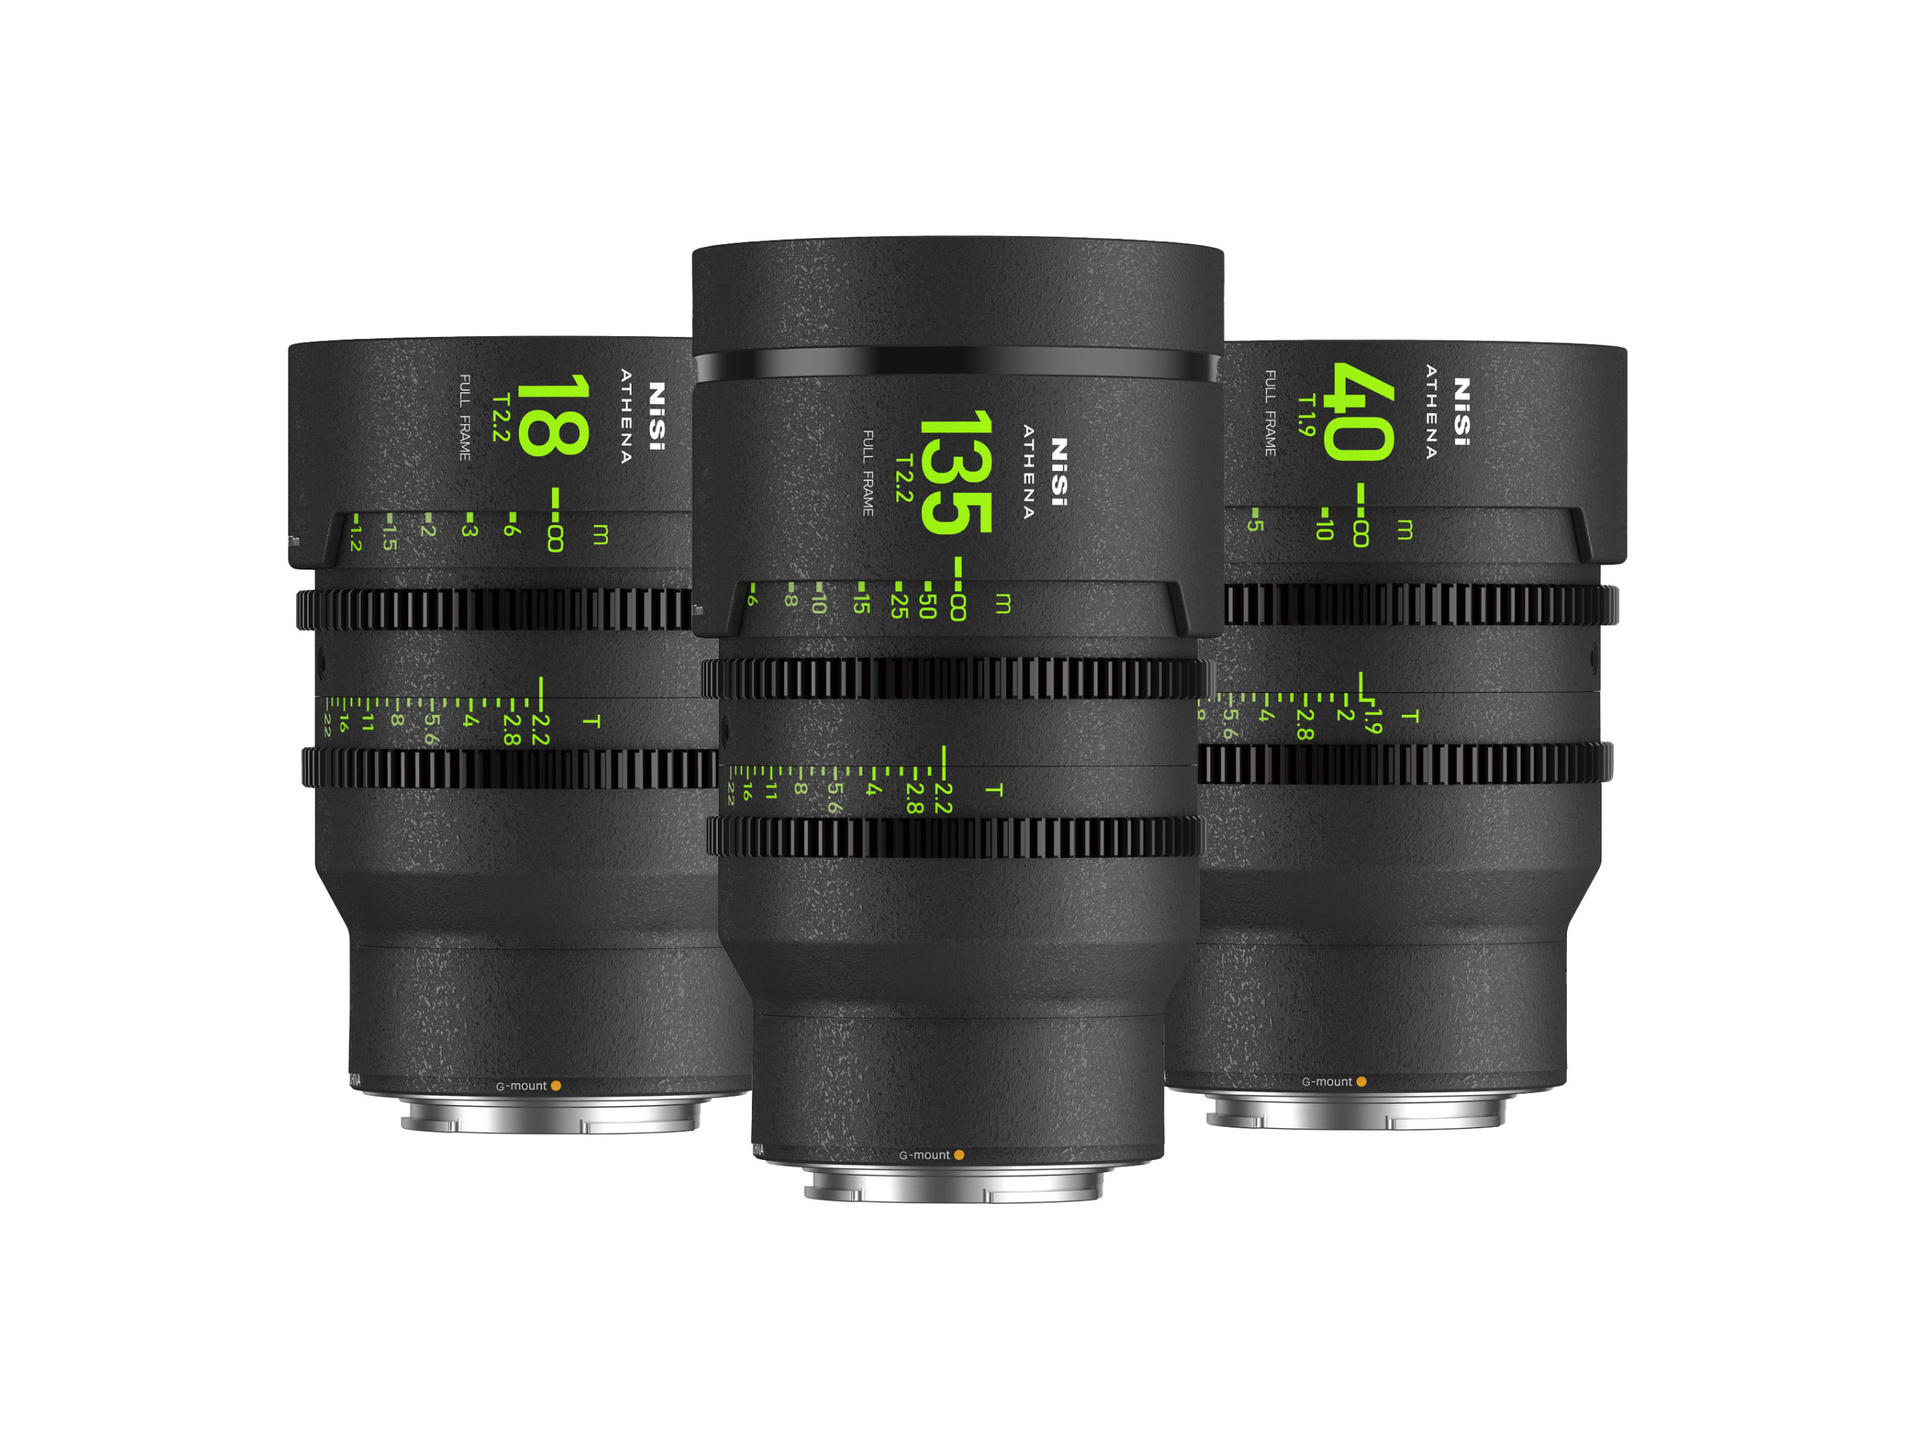 NiSi ATHENA PRIME Full Frame Cinema 3 Lens Add-On Kit (G Mount, No Drop In Filter)